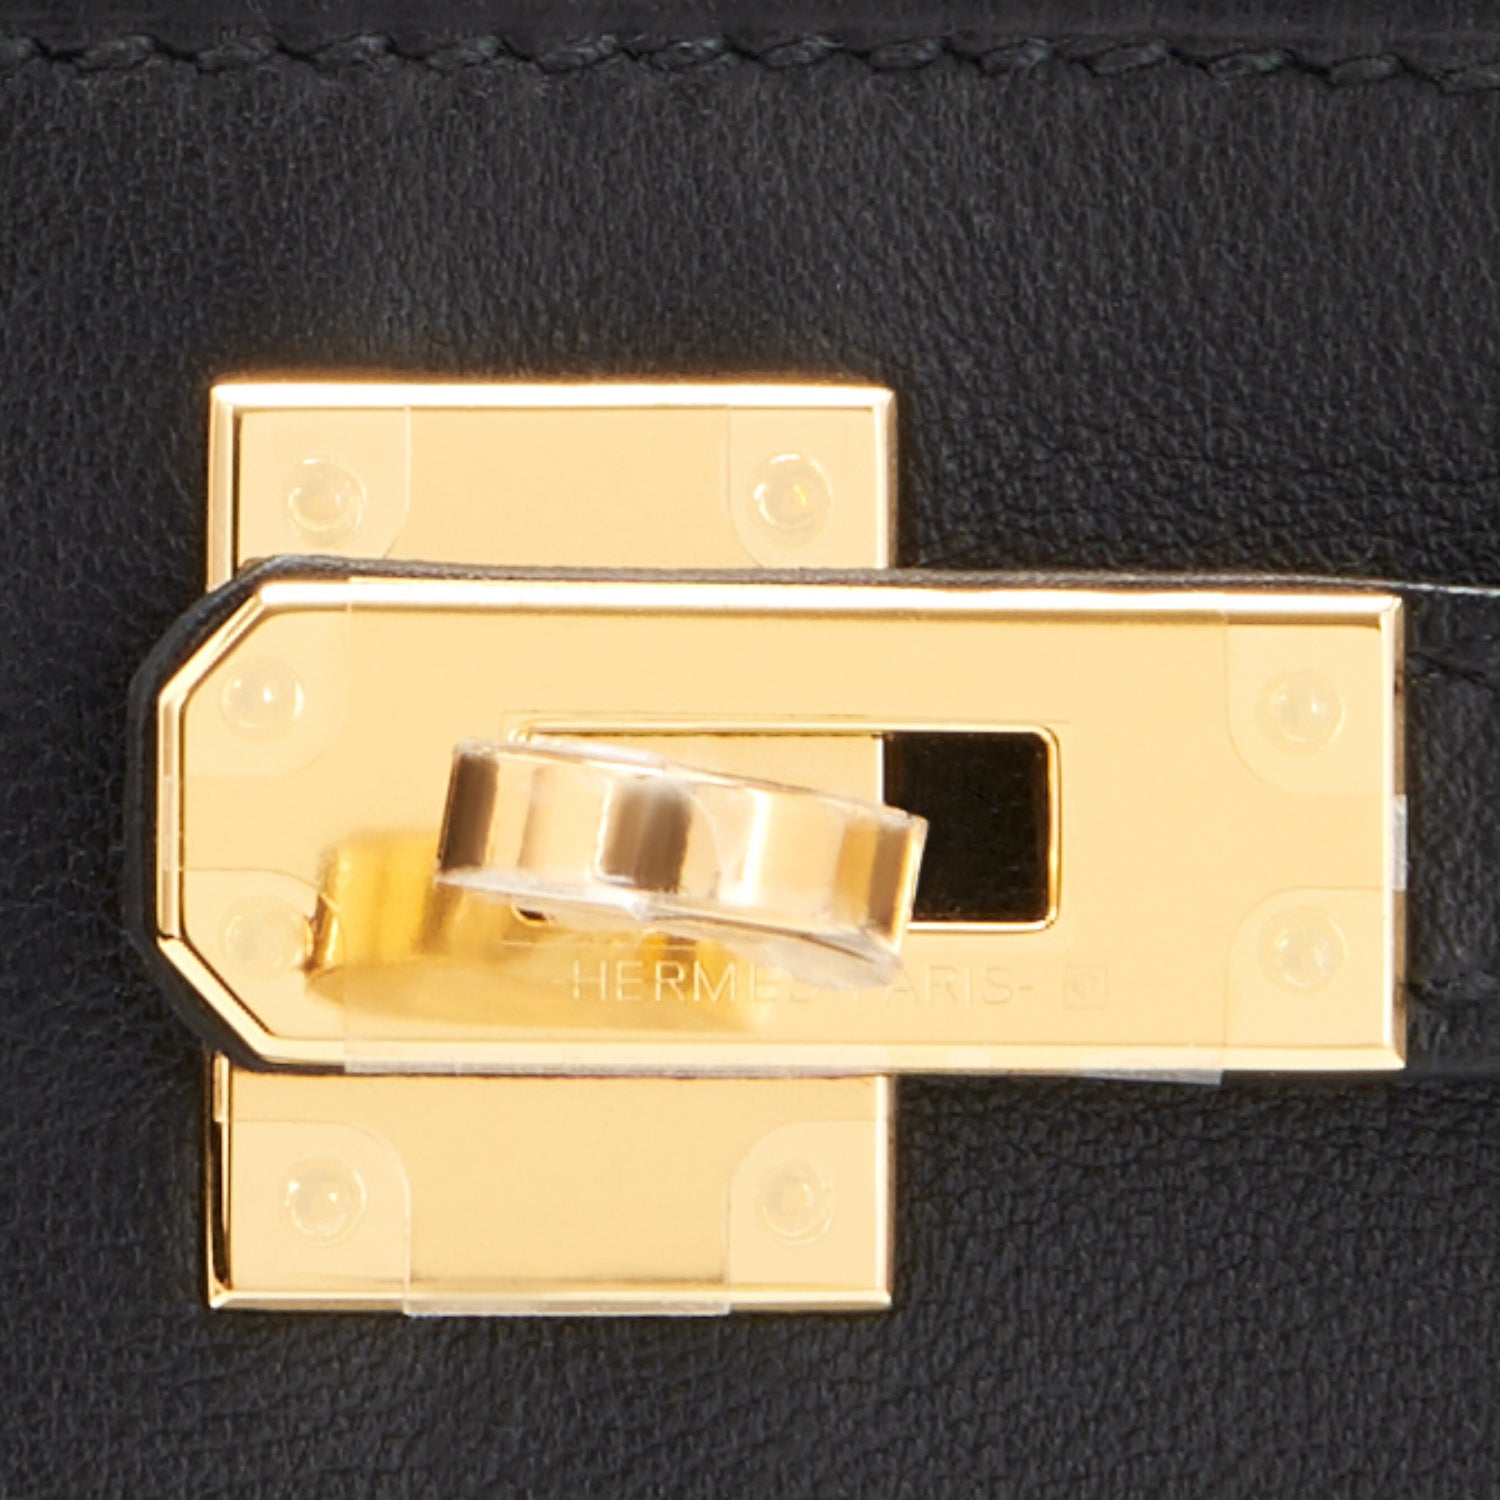 Hermes Mini Kelly Pochette Gold Swift GHW Clutch